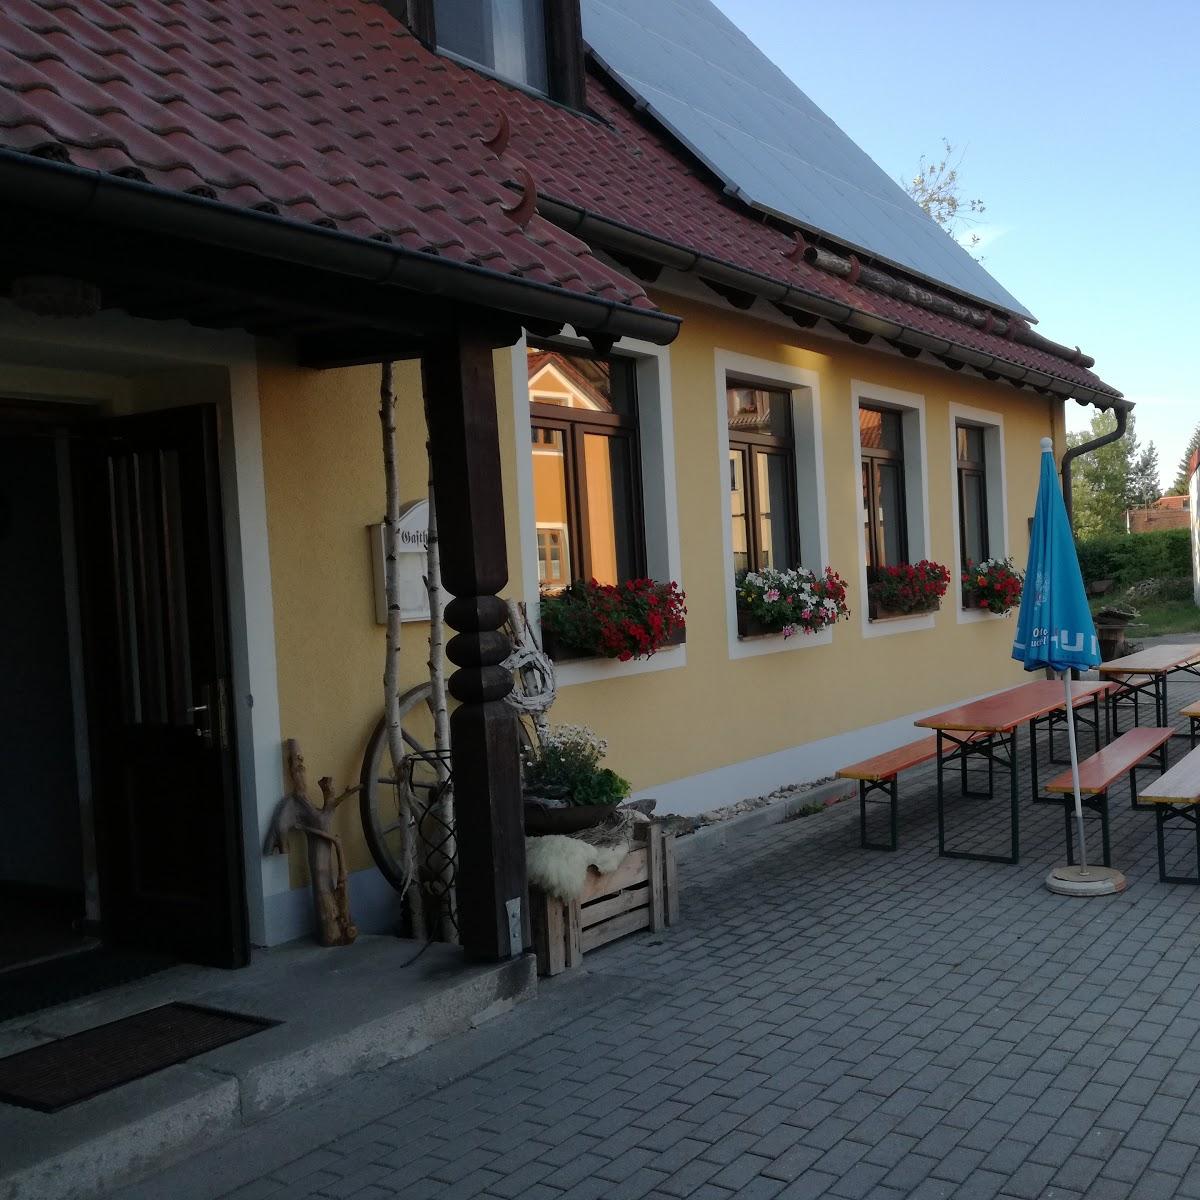 Restaurant "Stefan Nahrhaft" in  Waidhaus